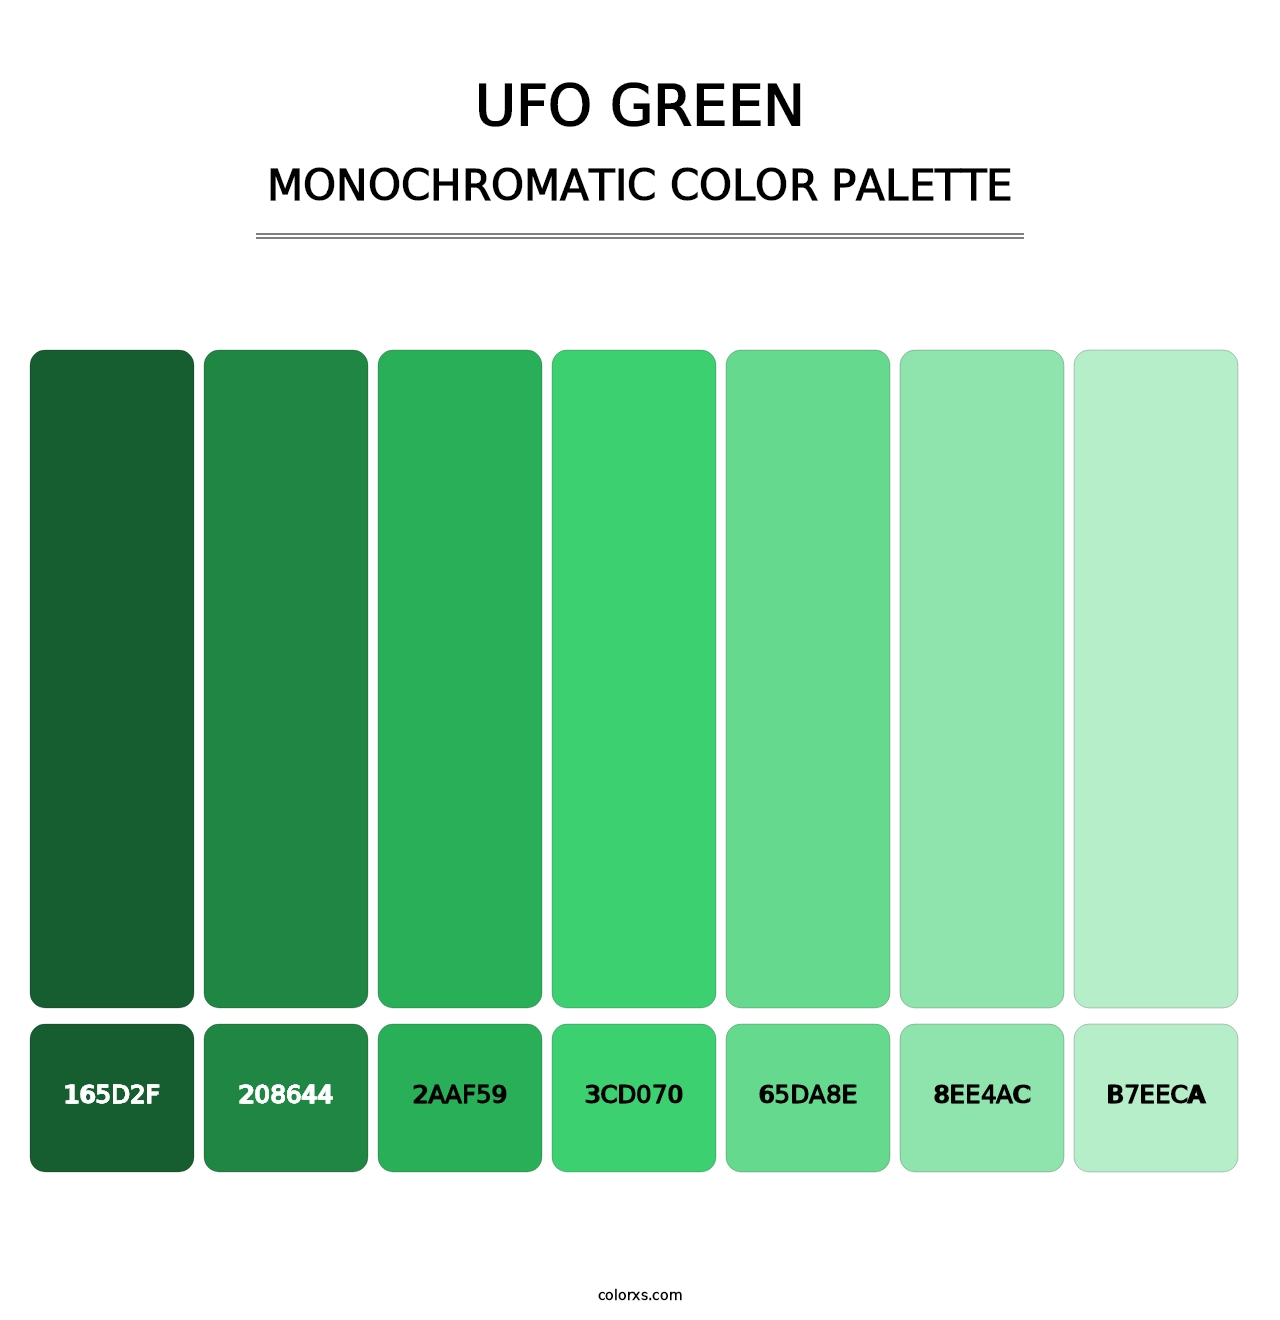 UFO Green - Monochromatic Color Palette